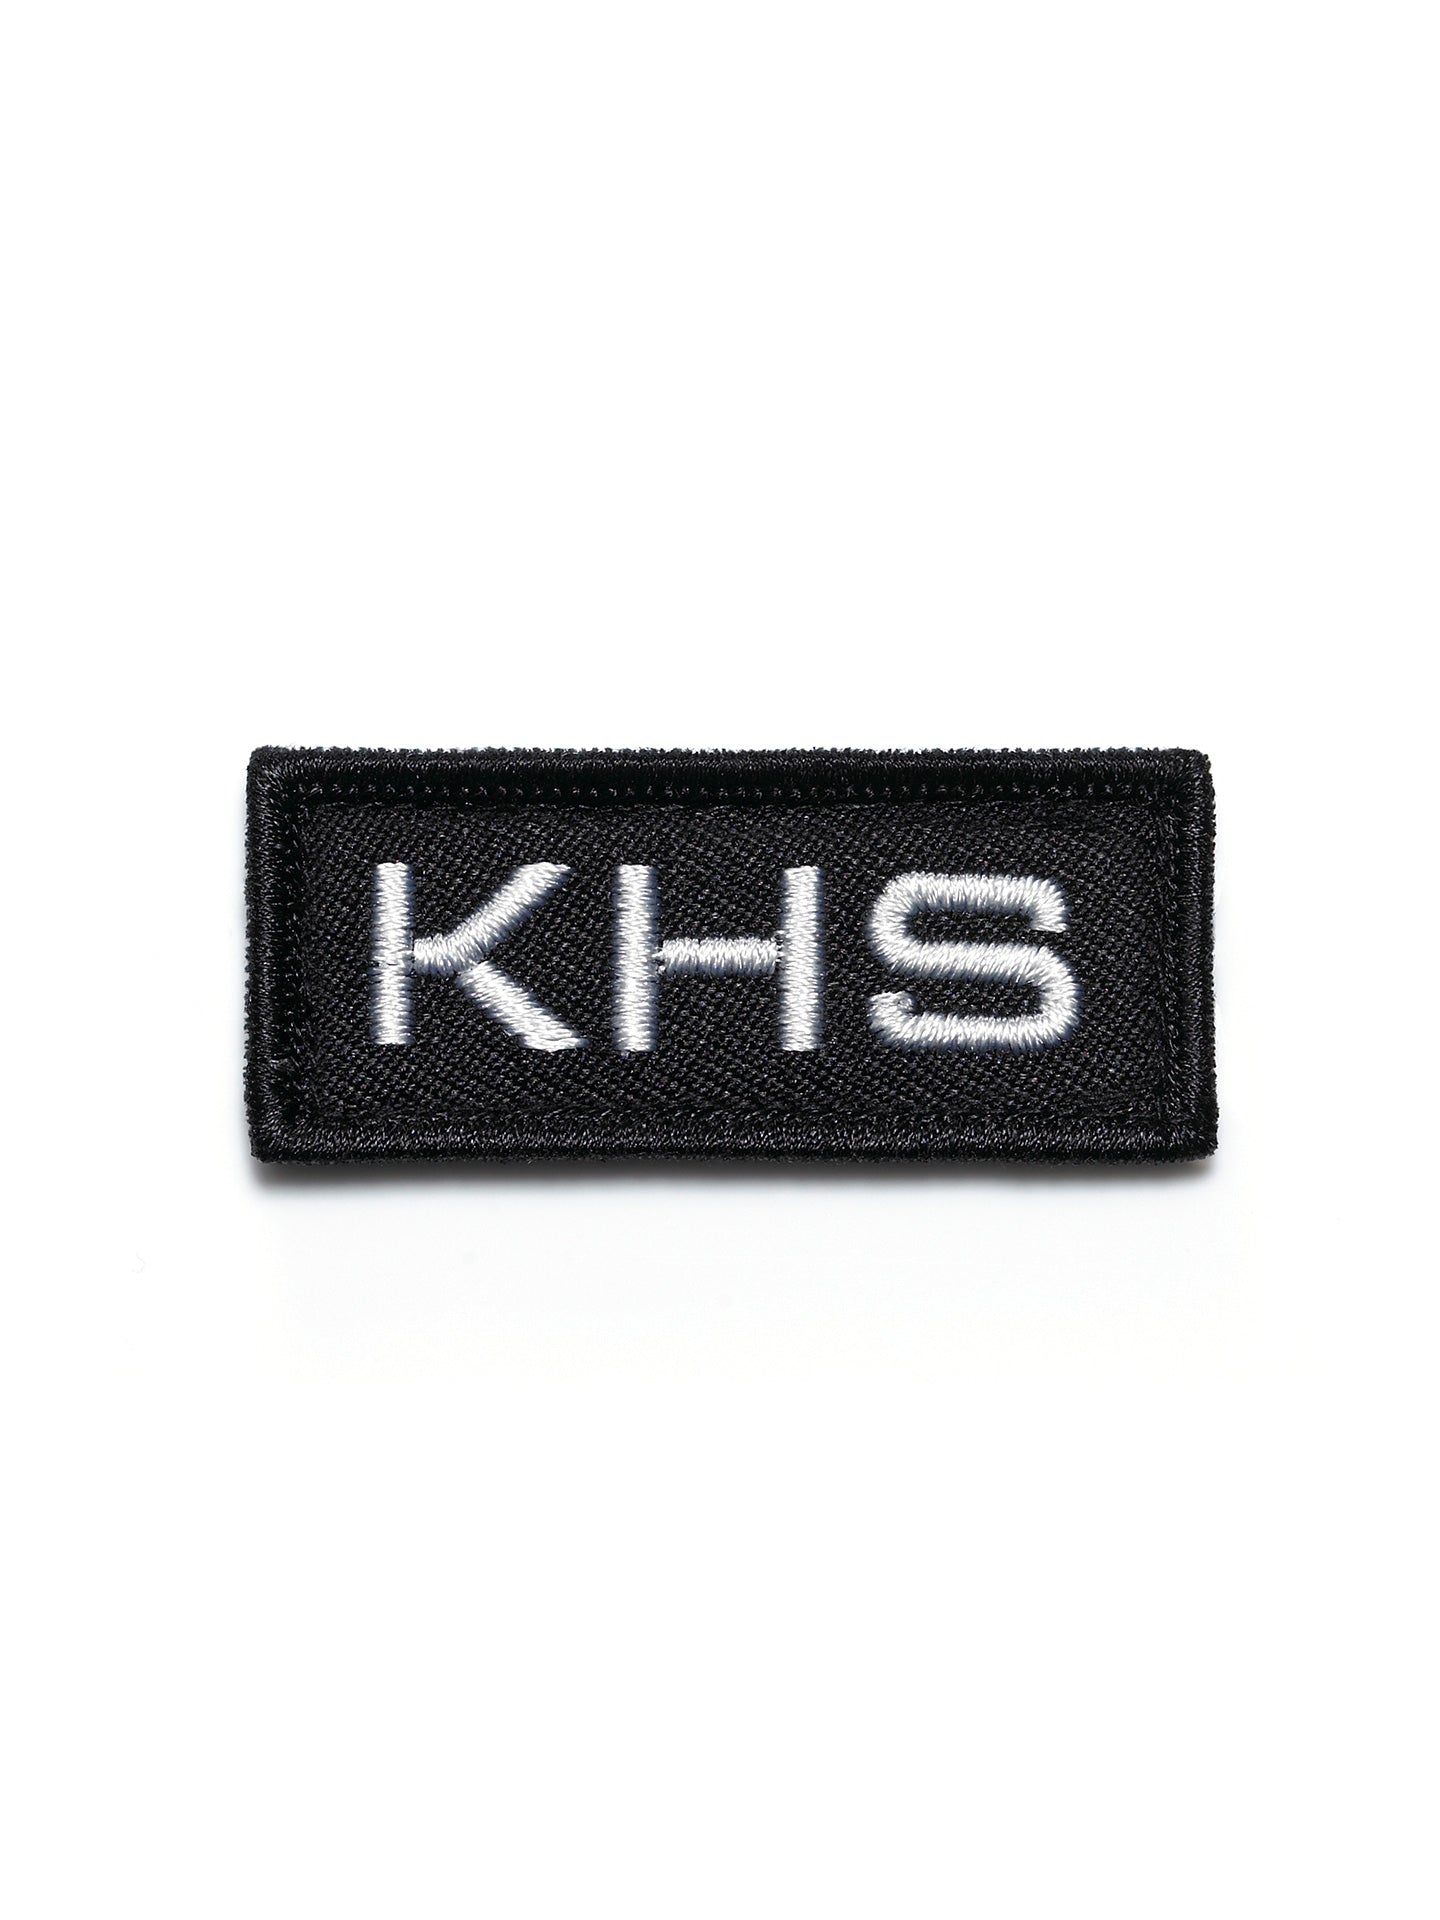 KHS Patch black